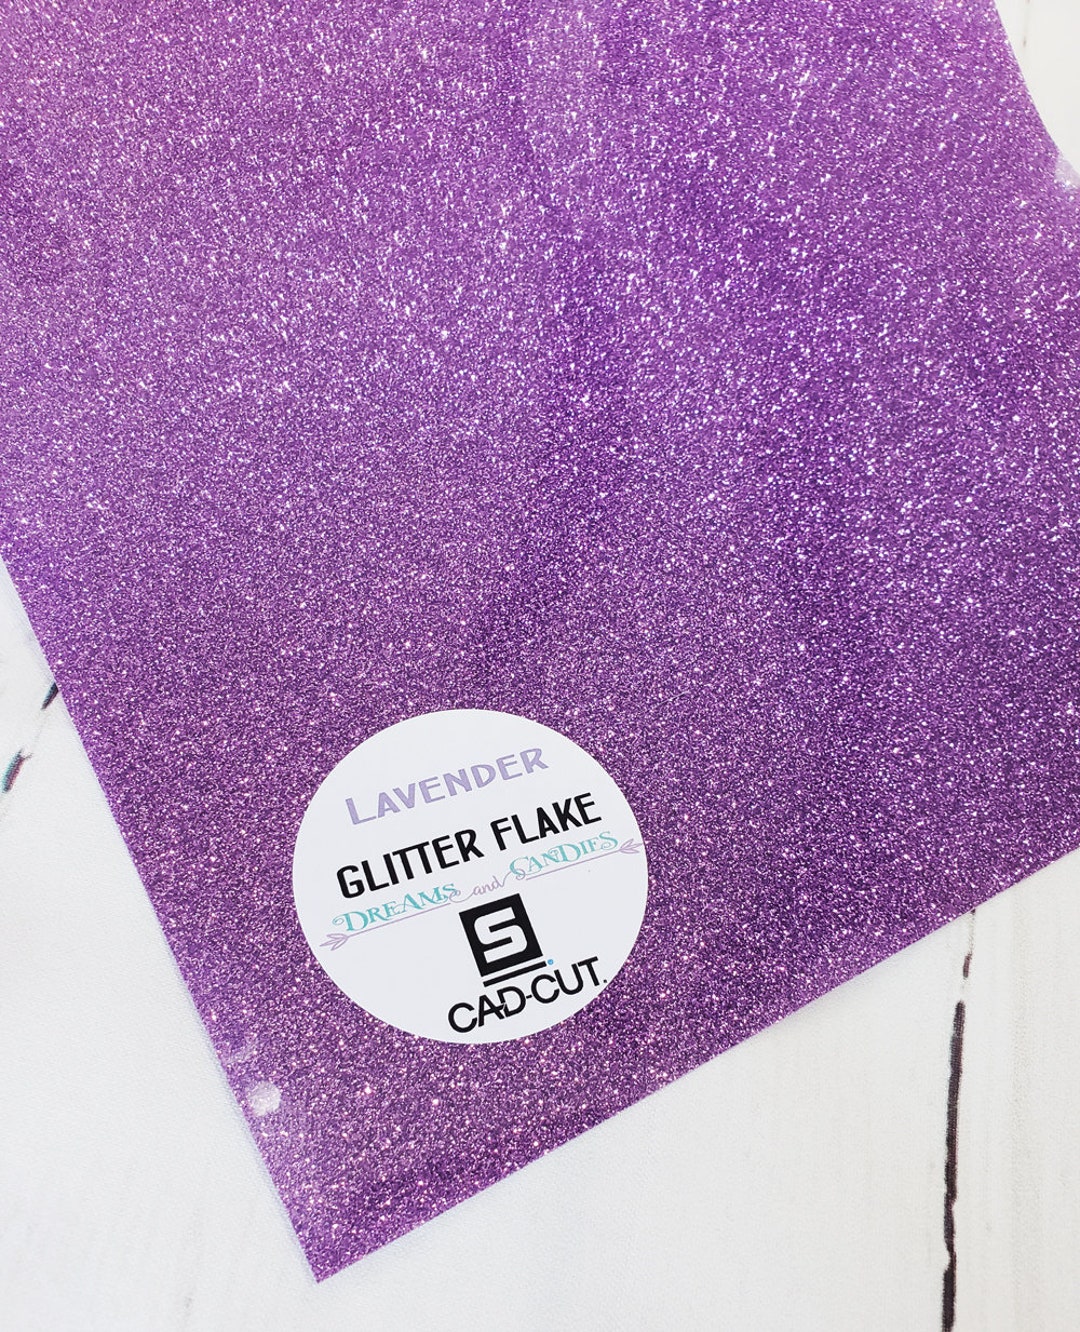 Siser Glitter HTV 20 x 12 Sheet - Iron on Heat Transfer Vinyl (Lavender)